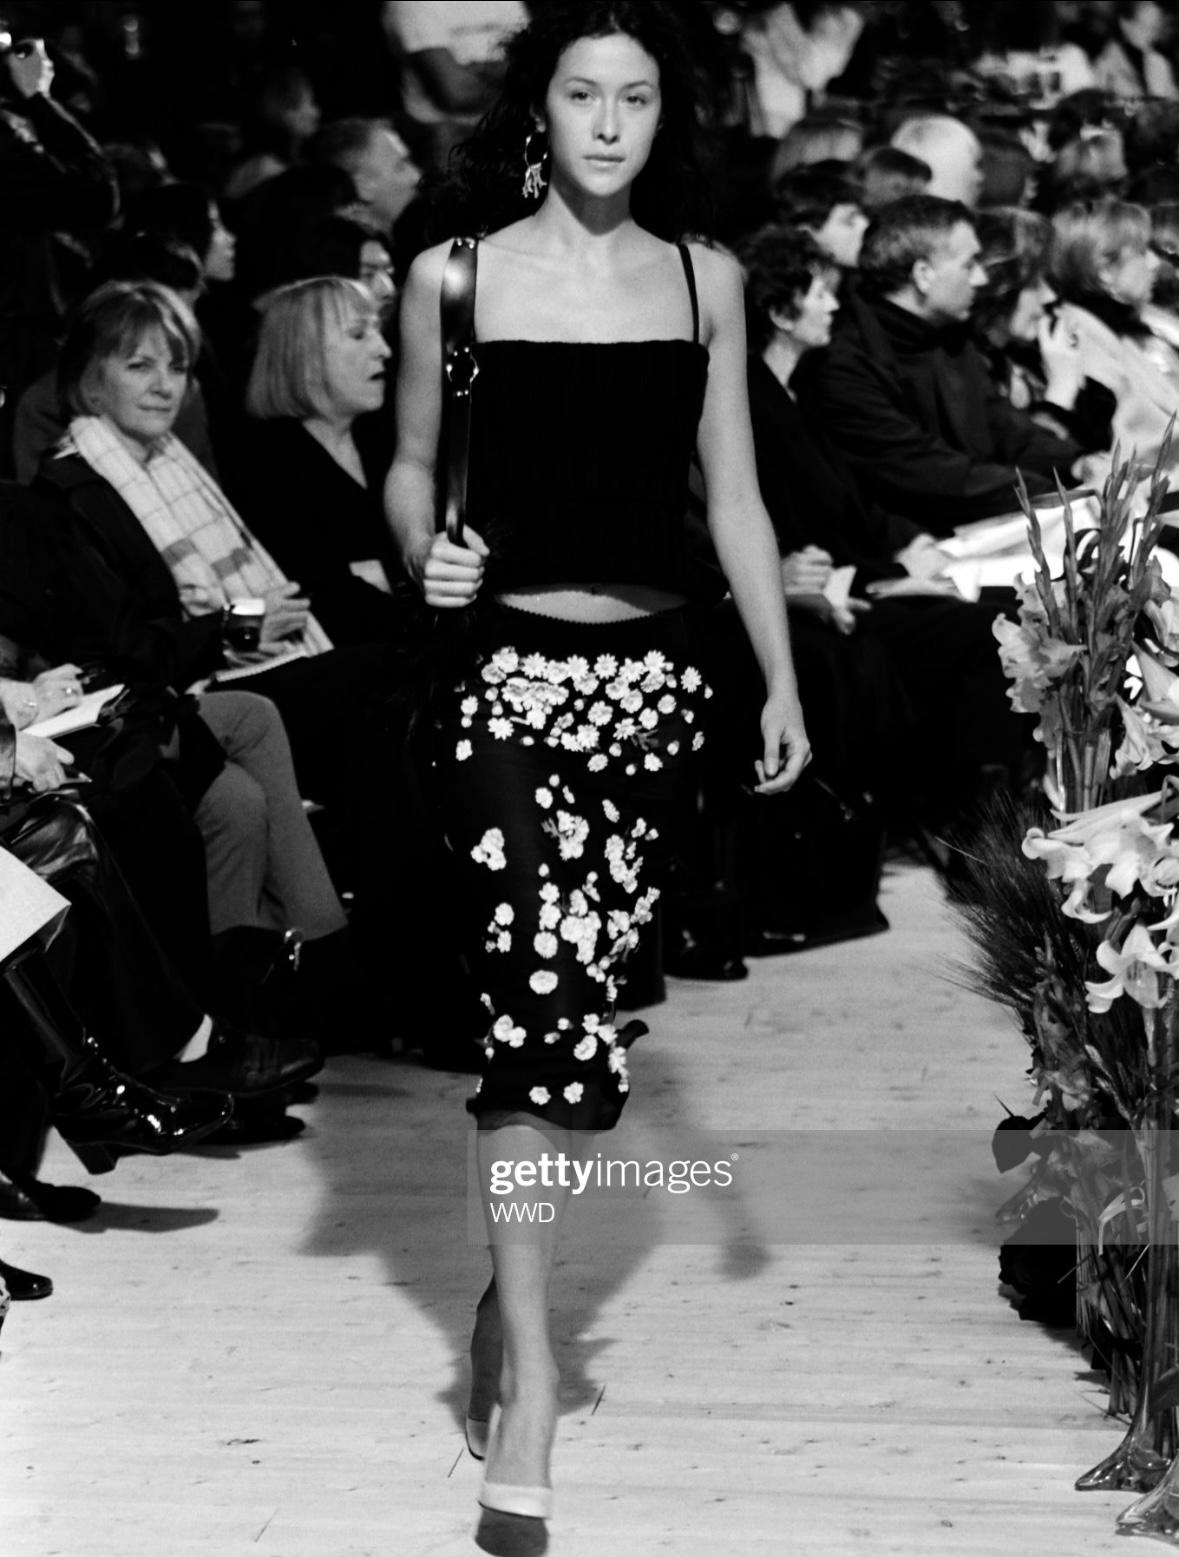 Ich präsentiere einen wunderschönen schwarzen Rock von Dolce & Gabbana mit Blumenakzenten. Dieser fabelhafte Rock aus der Herbst/Winter-Kollektion 1999, der mit Gänseblümchen-Applikationen aus Stoff überzogen ist, wurde erstmals auf dem Laufsteg von